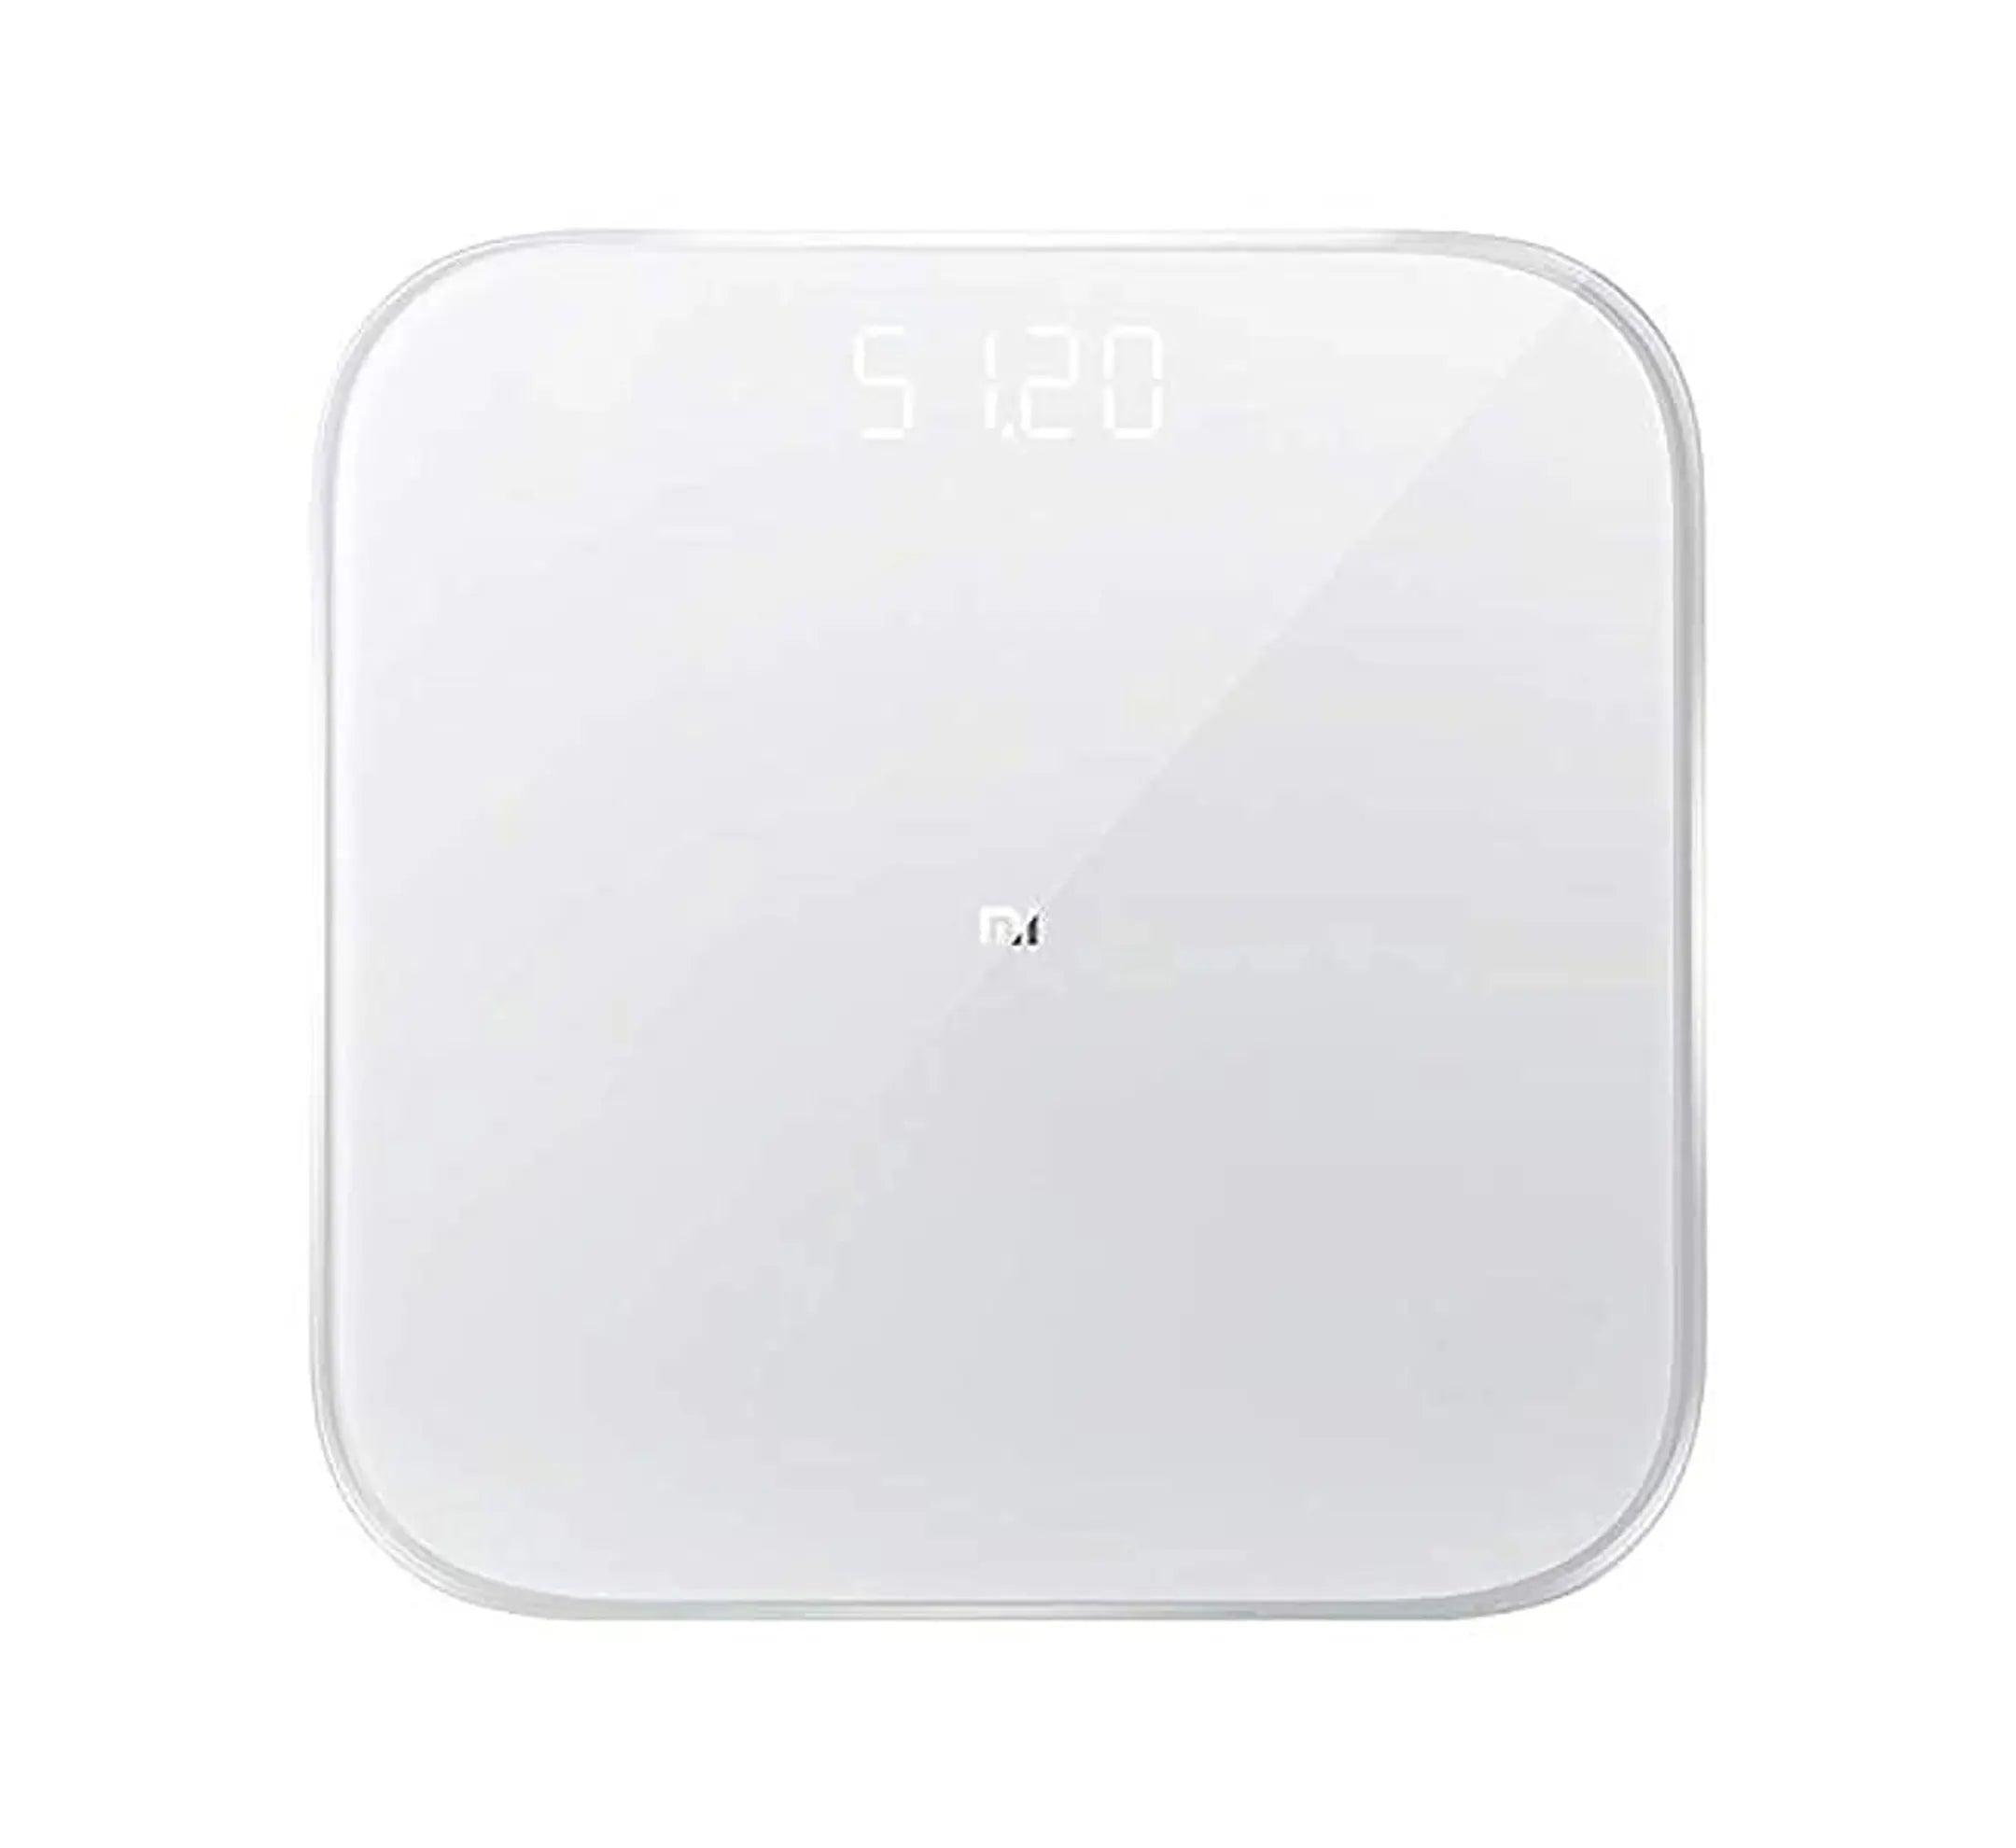 Mi Smart Scale 2 (White) - Brightex Retail UK